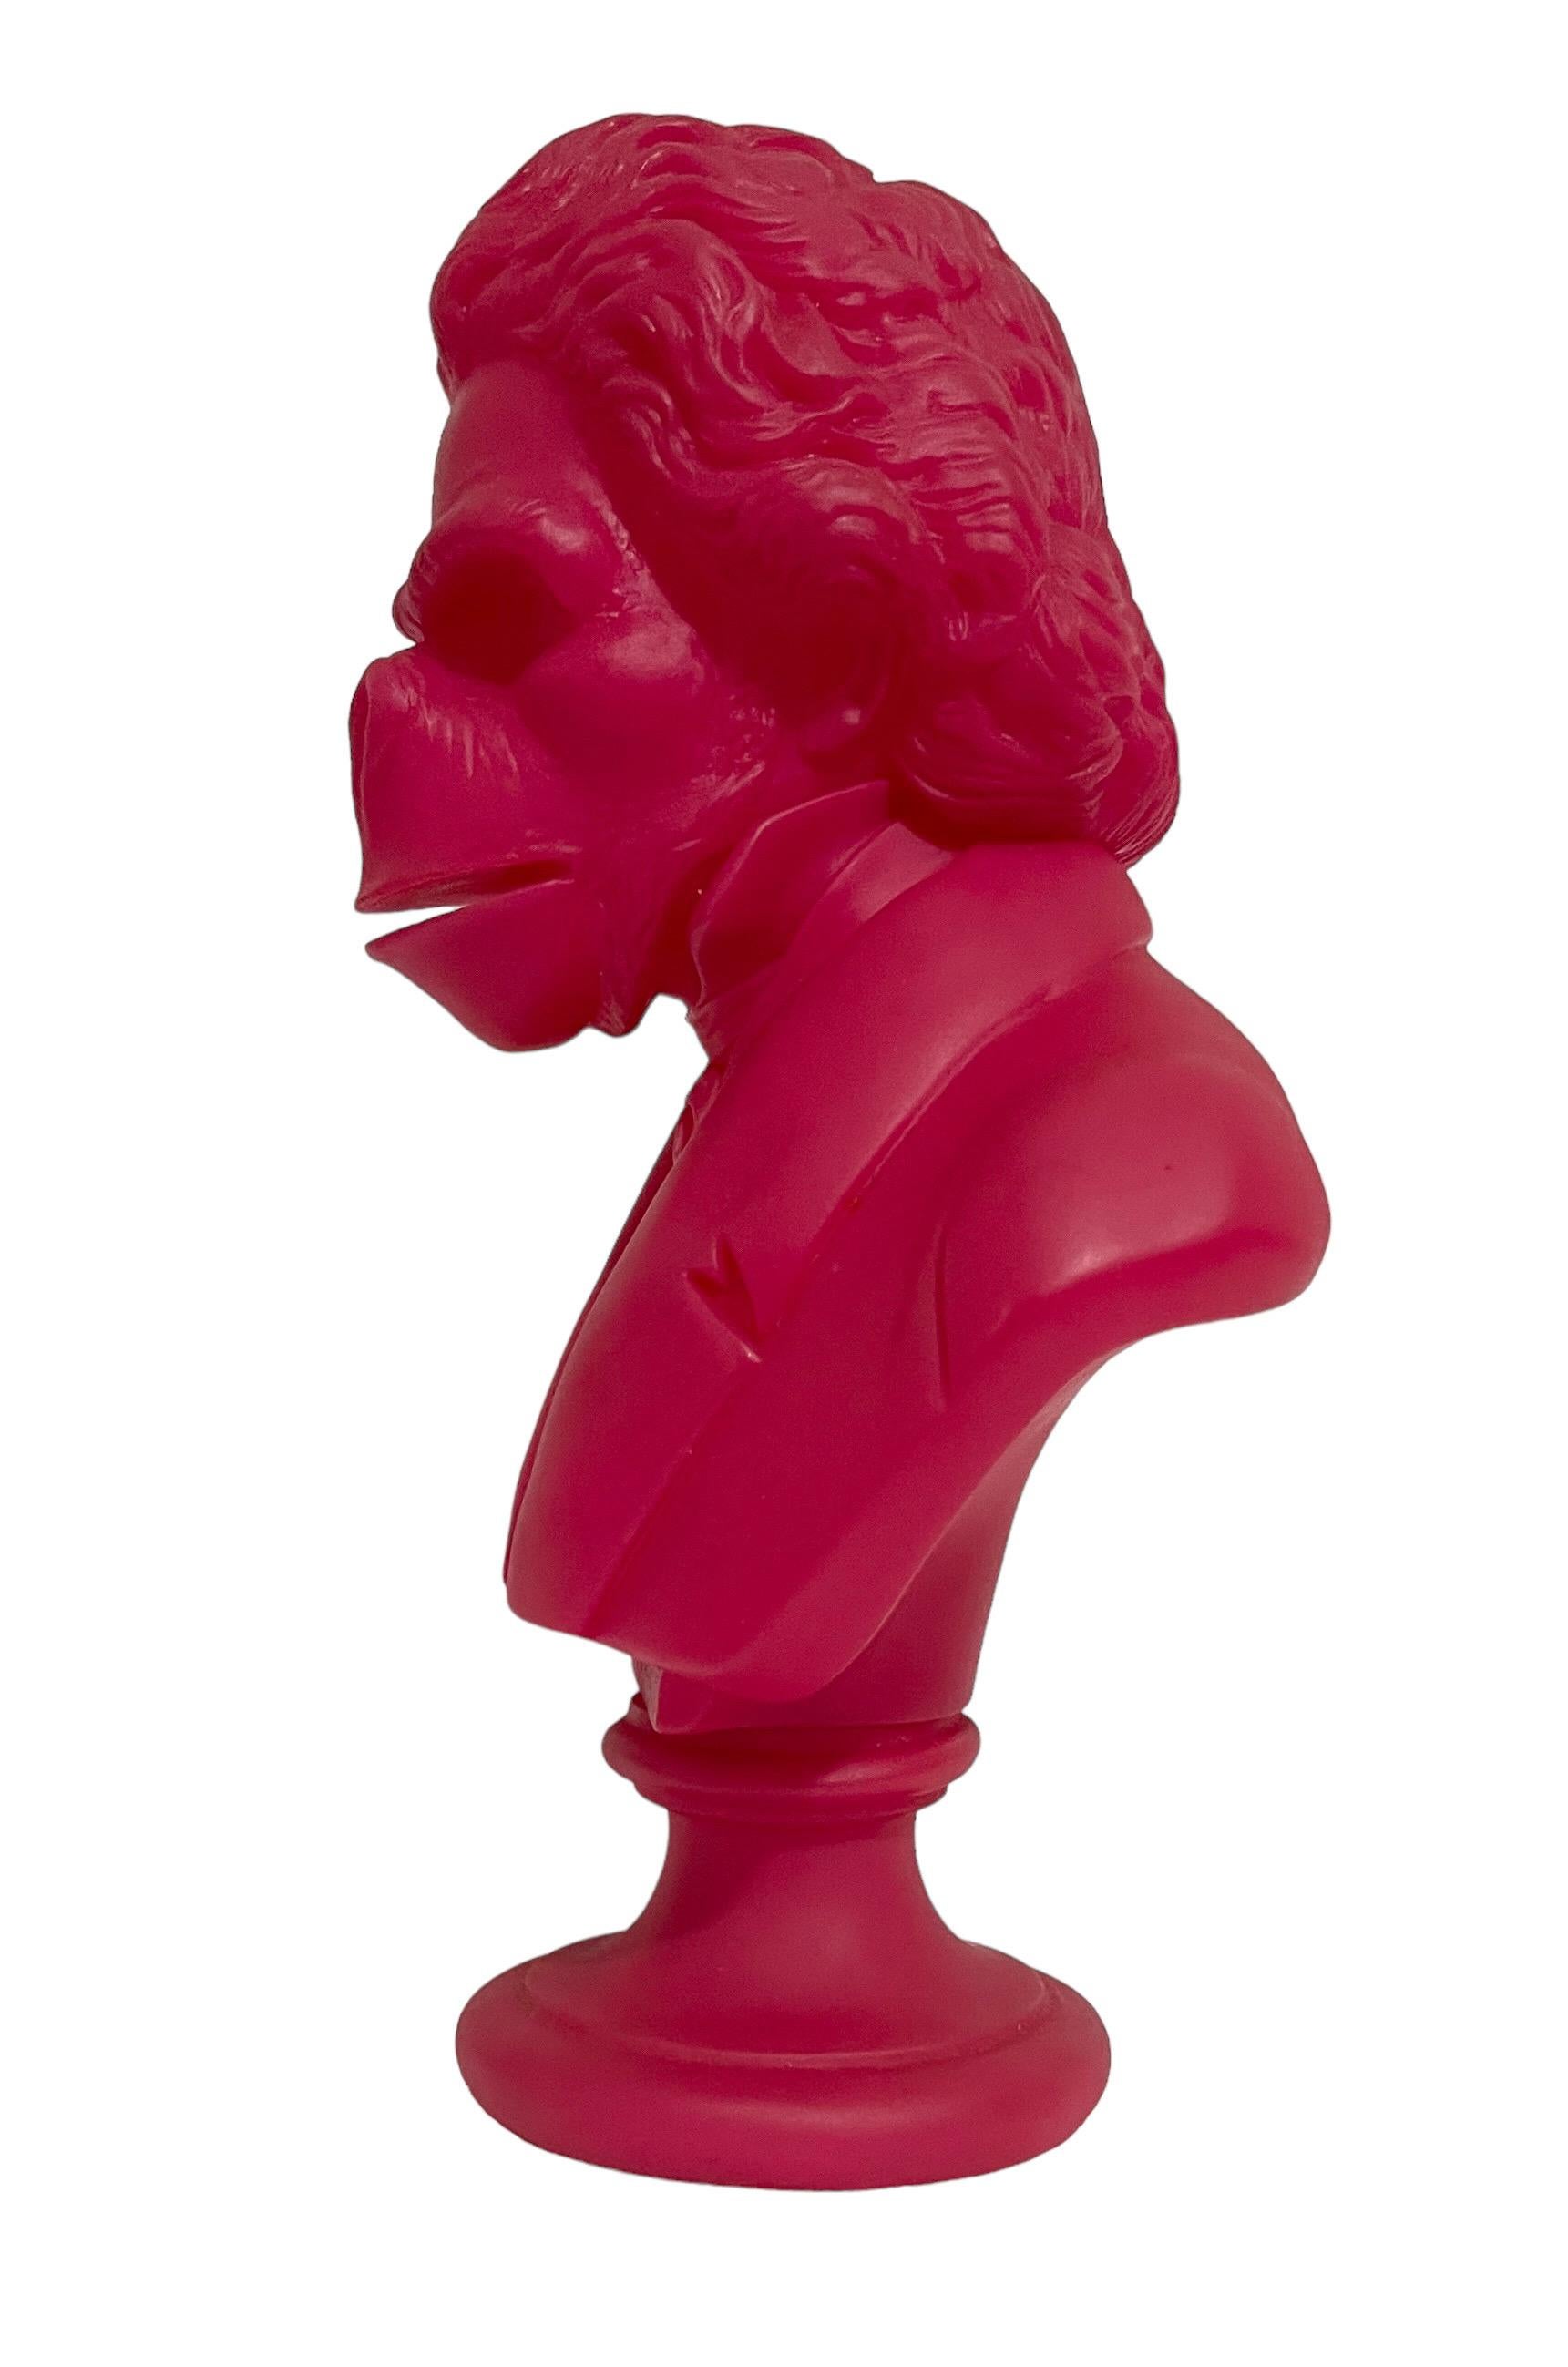 Rare Pink Apethoven Vinyl Adult Toy Ape Sculpture Bust SSUR Beethoven Medicom For Sale 6